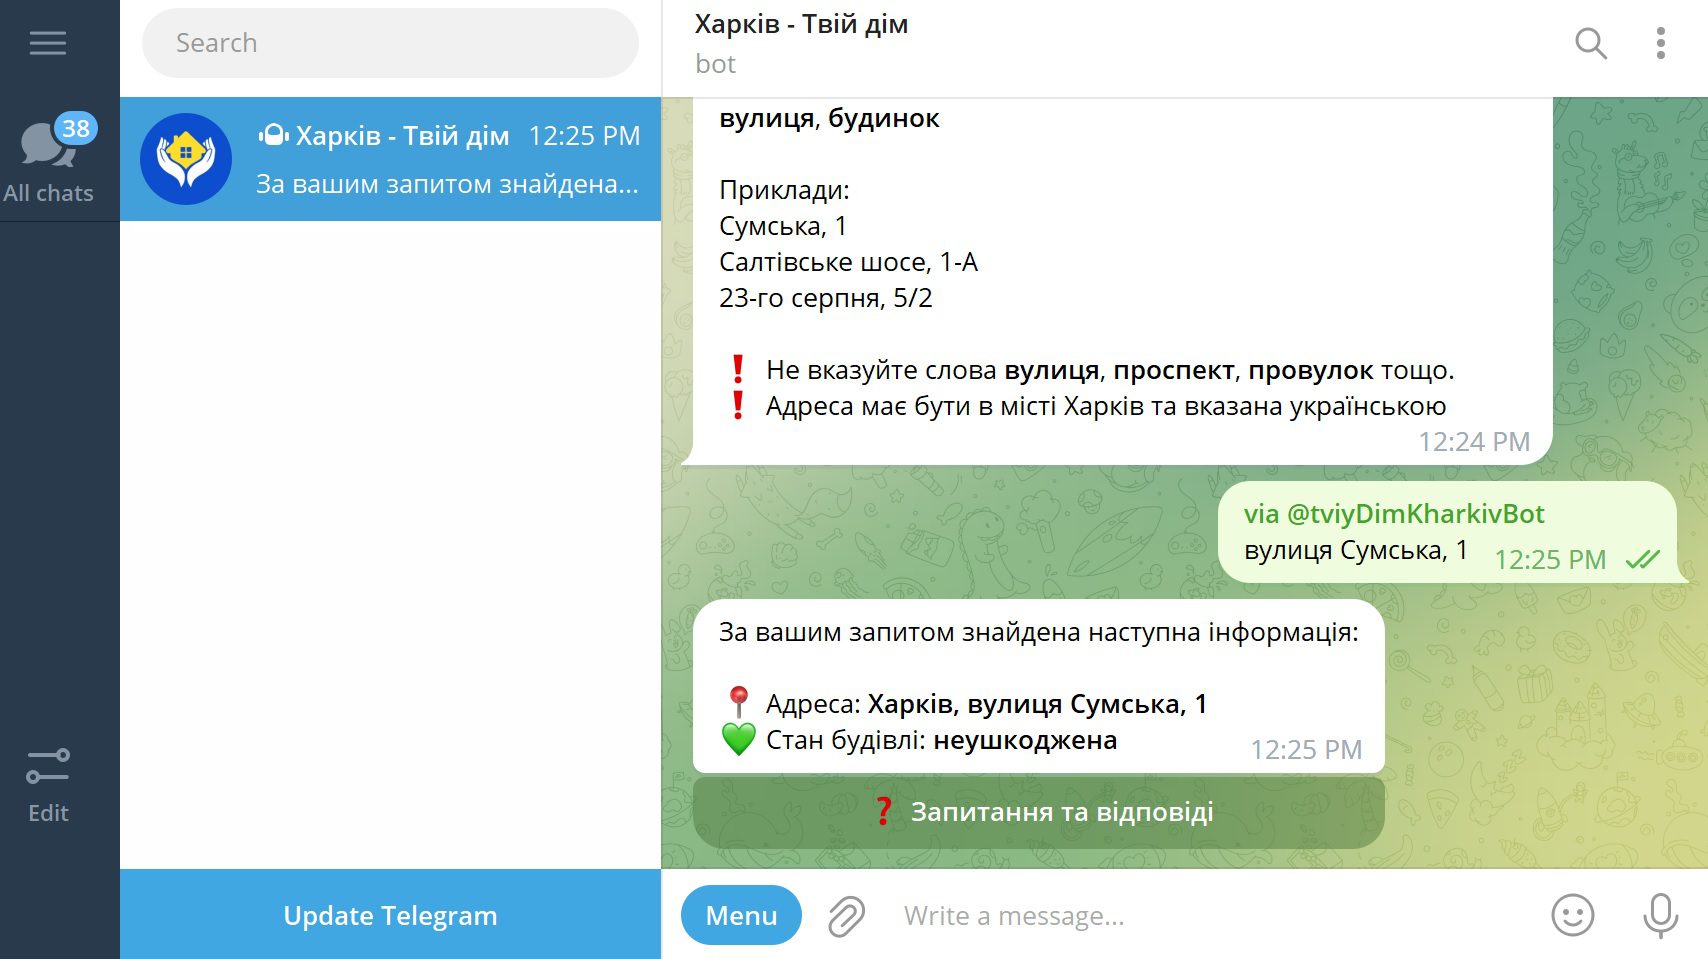 Chatbot for Kharkiv city residents